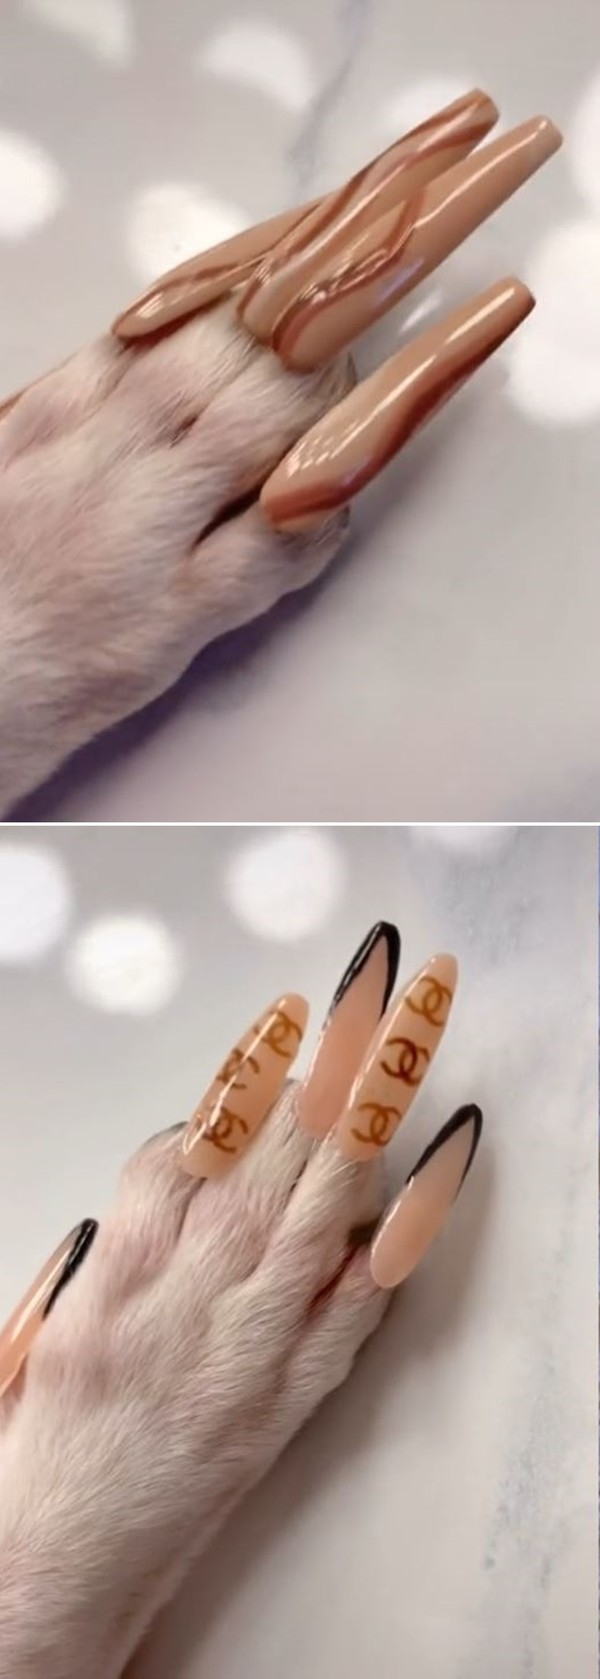 논란에도 많은 누리꾼들은 반려견용 손톱도 판매해달라고 요청했고, 마리차는 이에 응답해 곧 15달러 상당의 반려견용 가짜 손톱 컬렉션을 출시할 예정이며 수익의 일부는 동물구조 단체에 기부한다고 밝혔다.